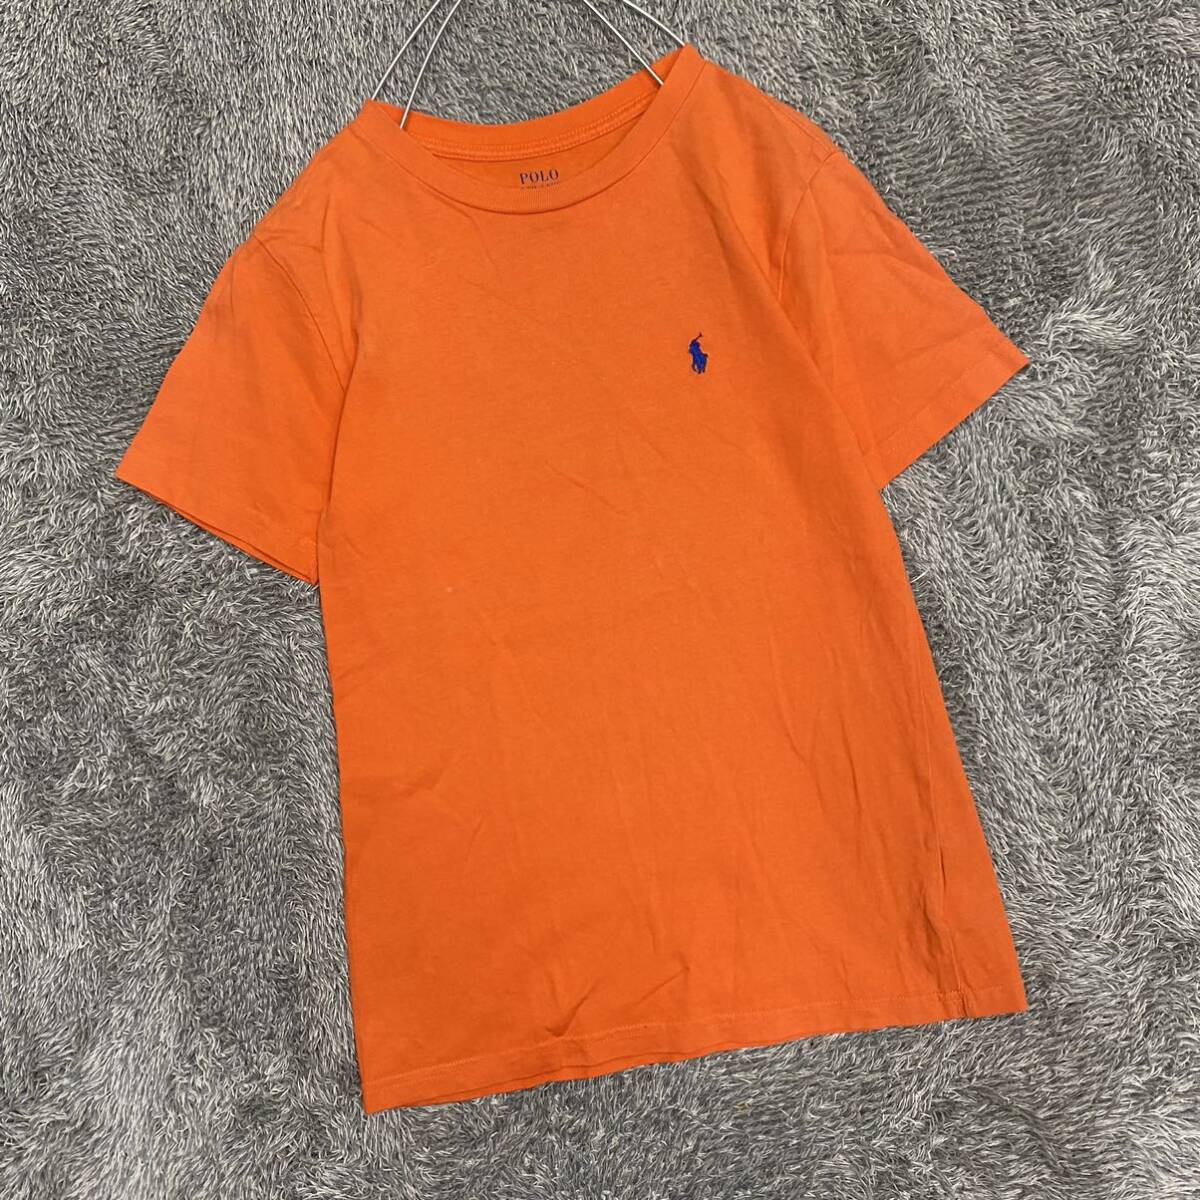 POLO RALPH LAUREN ラルフローレン Tシャツ 半袖カットソー サイズS オレンジ キッズ 子供服 トップス 最落なし （S19）_画像1